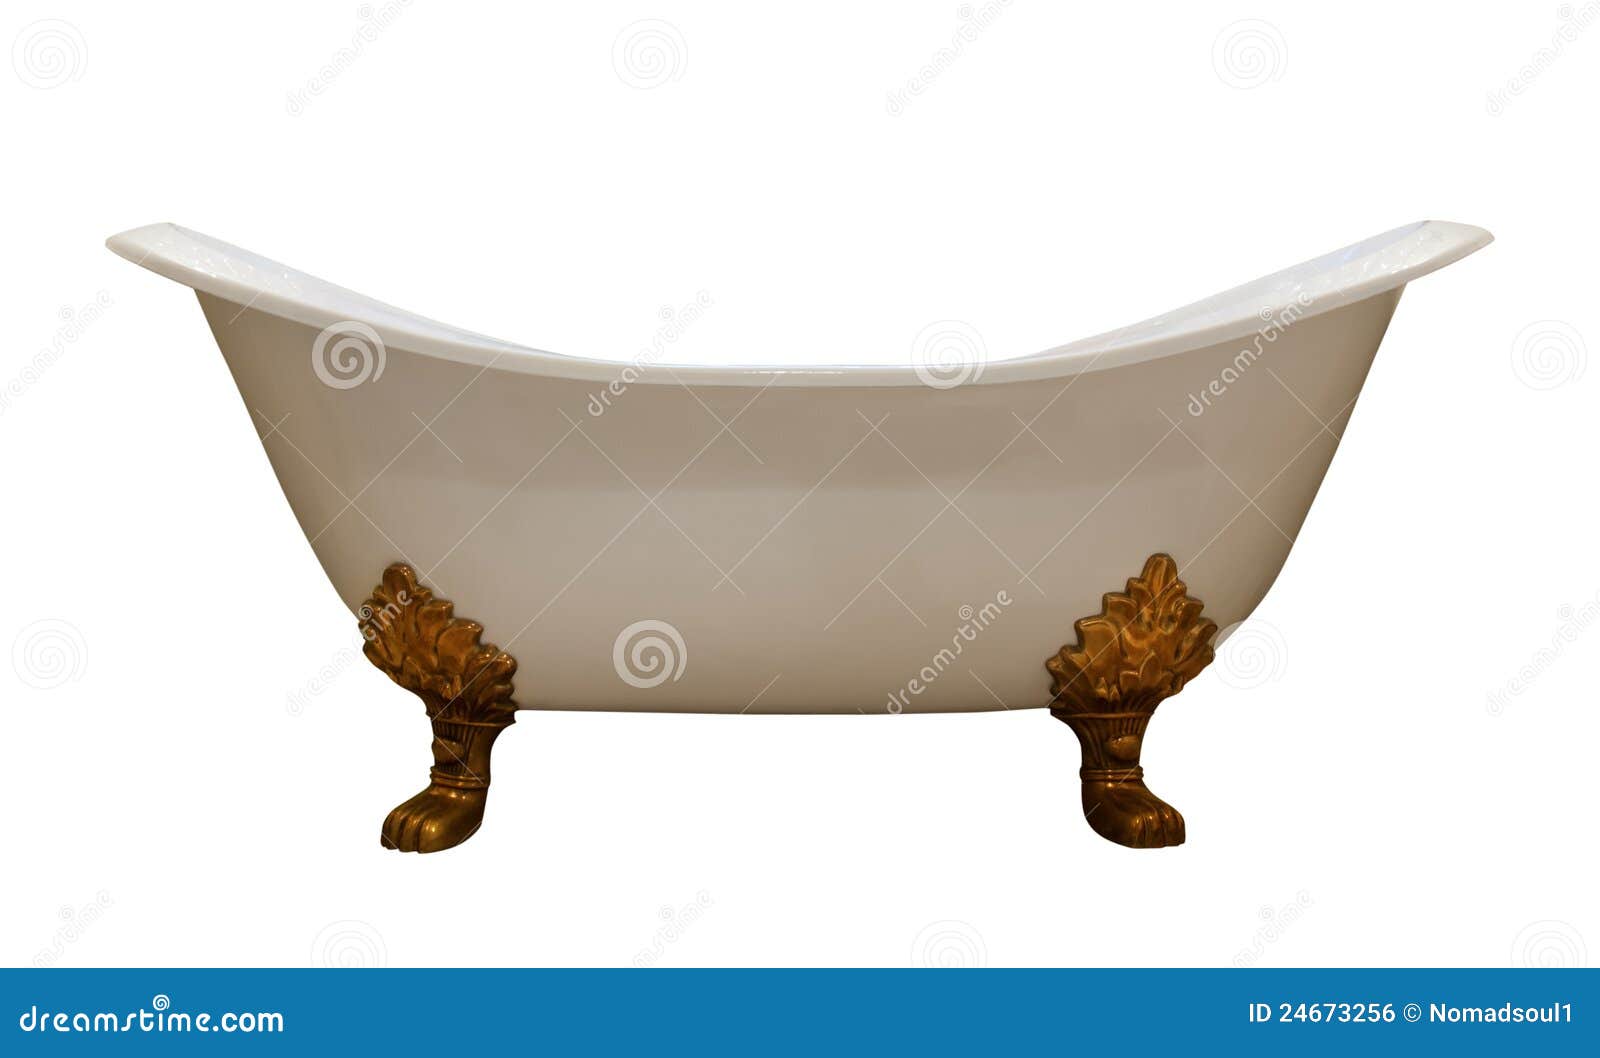 luxury vintage bathtub